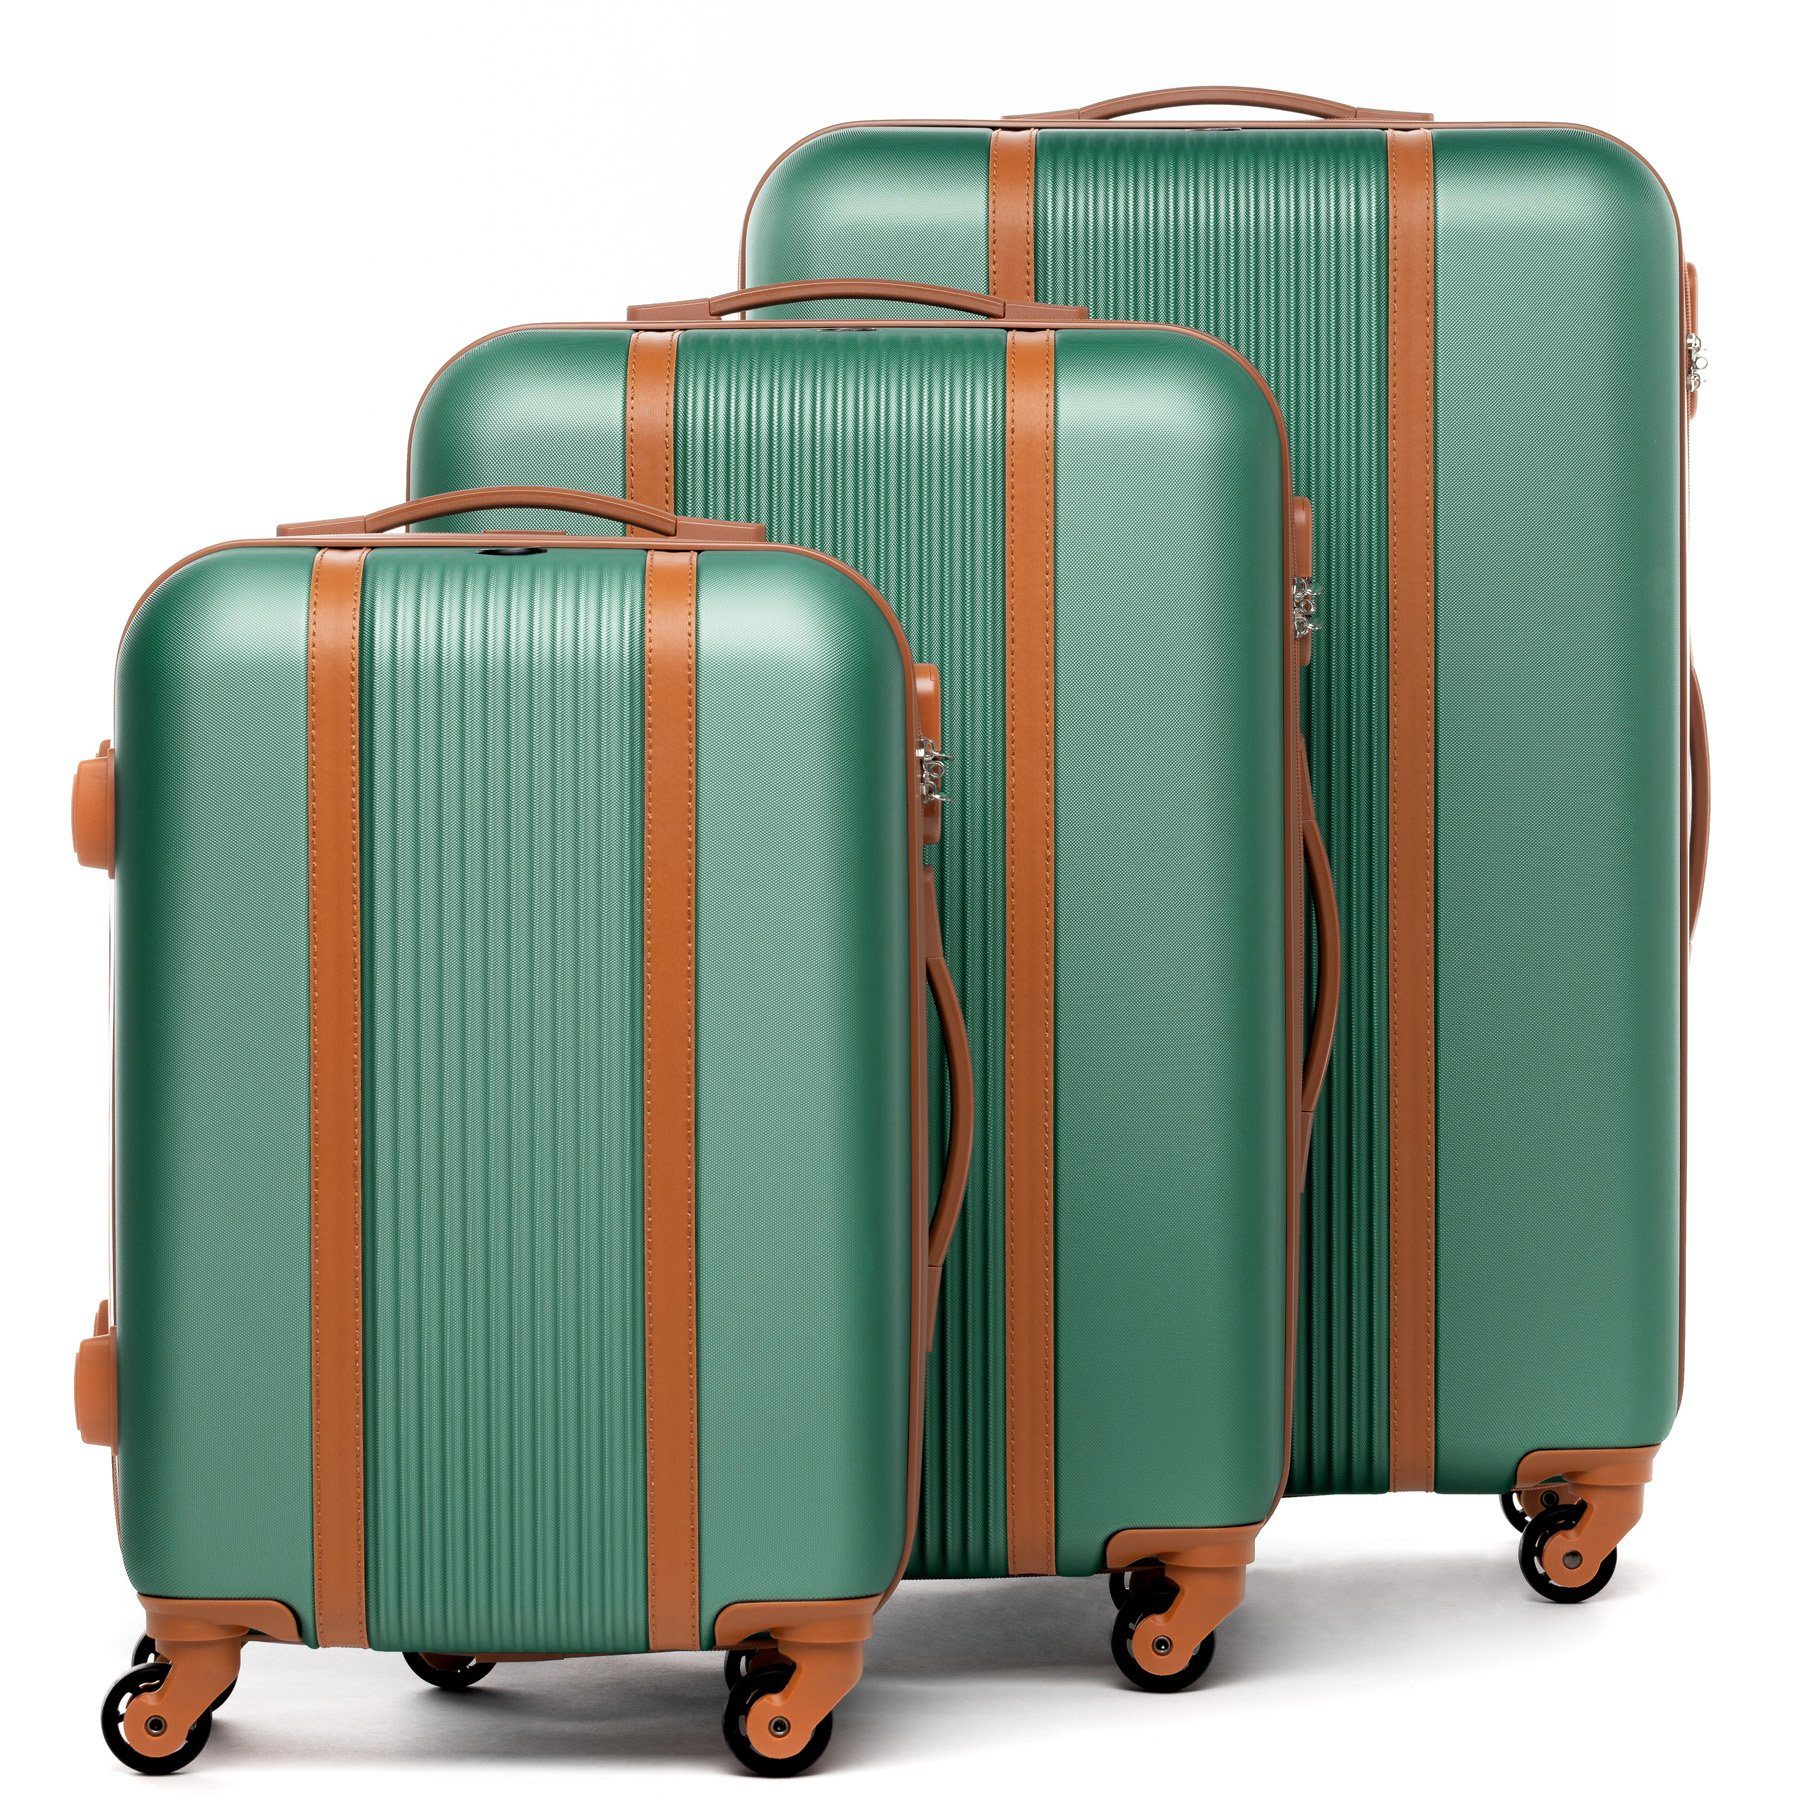 Reisekoffer Premium Rollkoffer Set, 4 salbei-grün Hartschale 3 Koffer Rollen, Milano, Kofferset Trolley 3er FERGÉ teilig